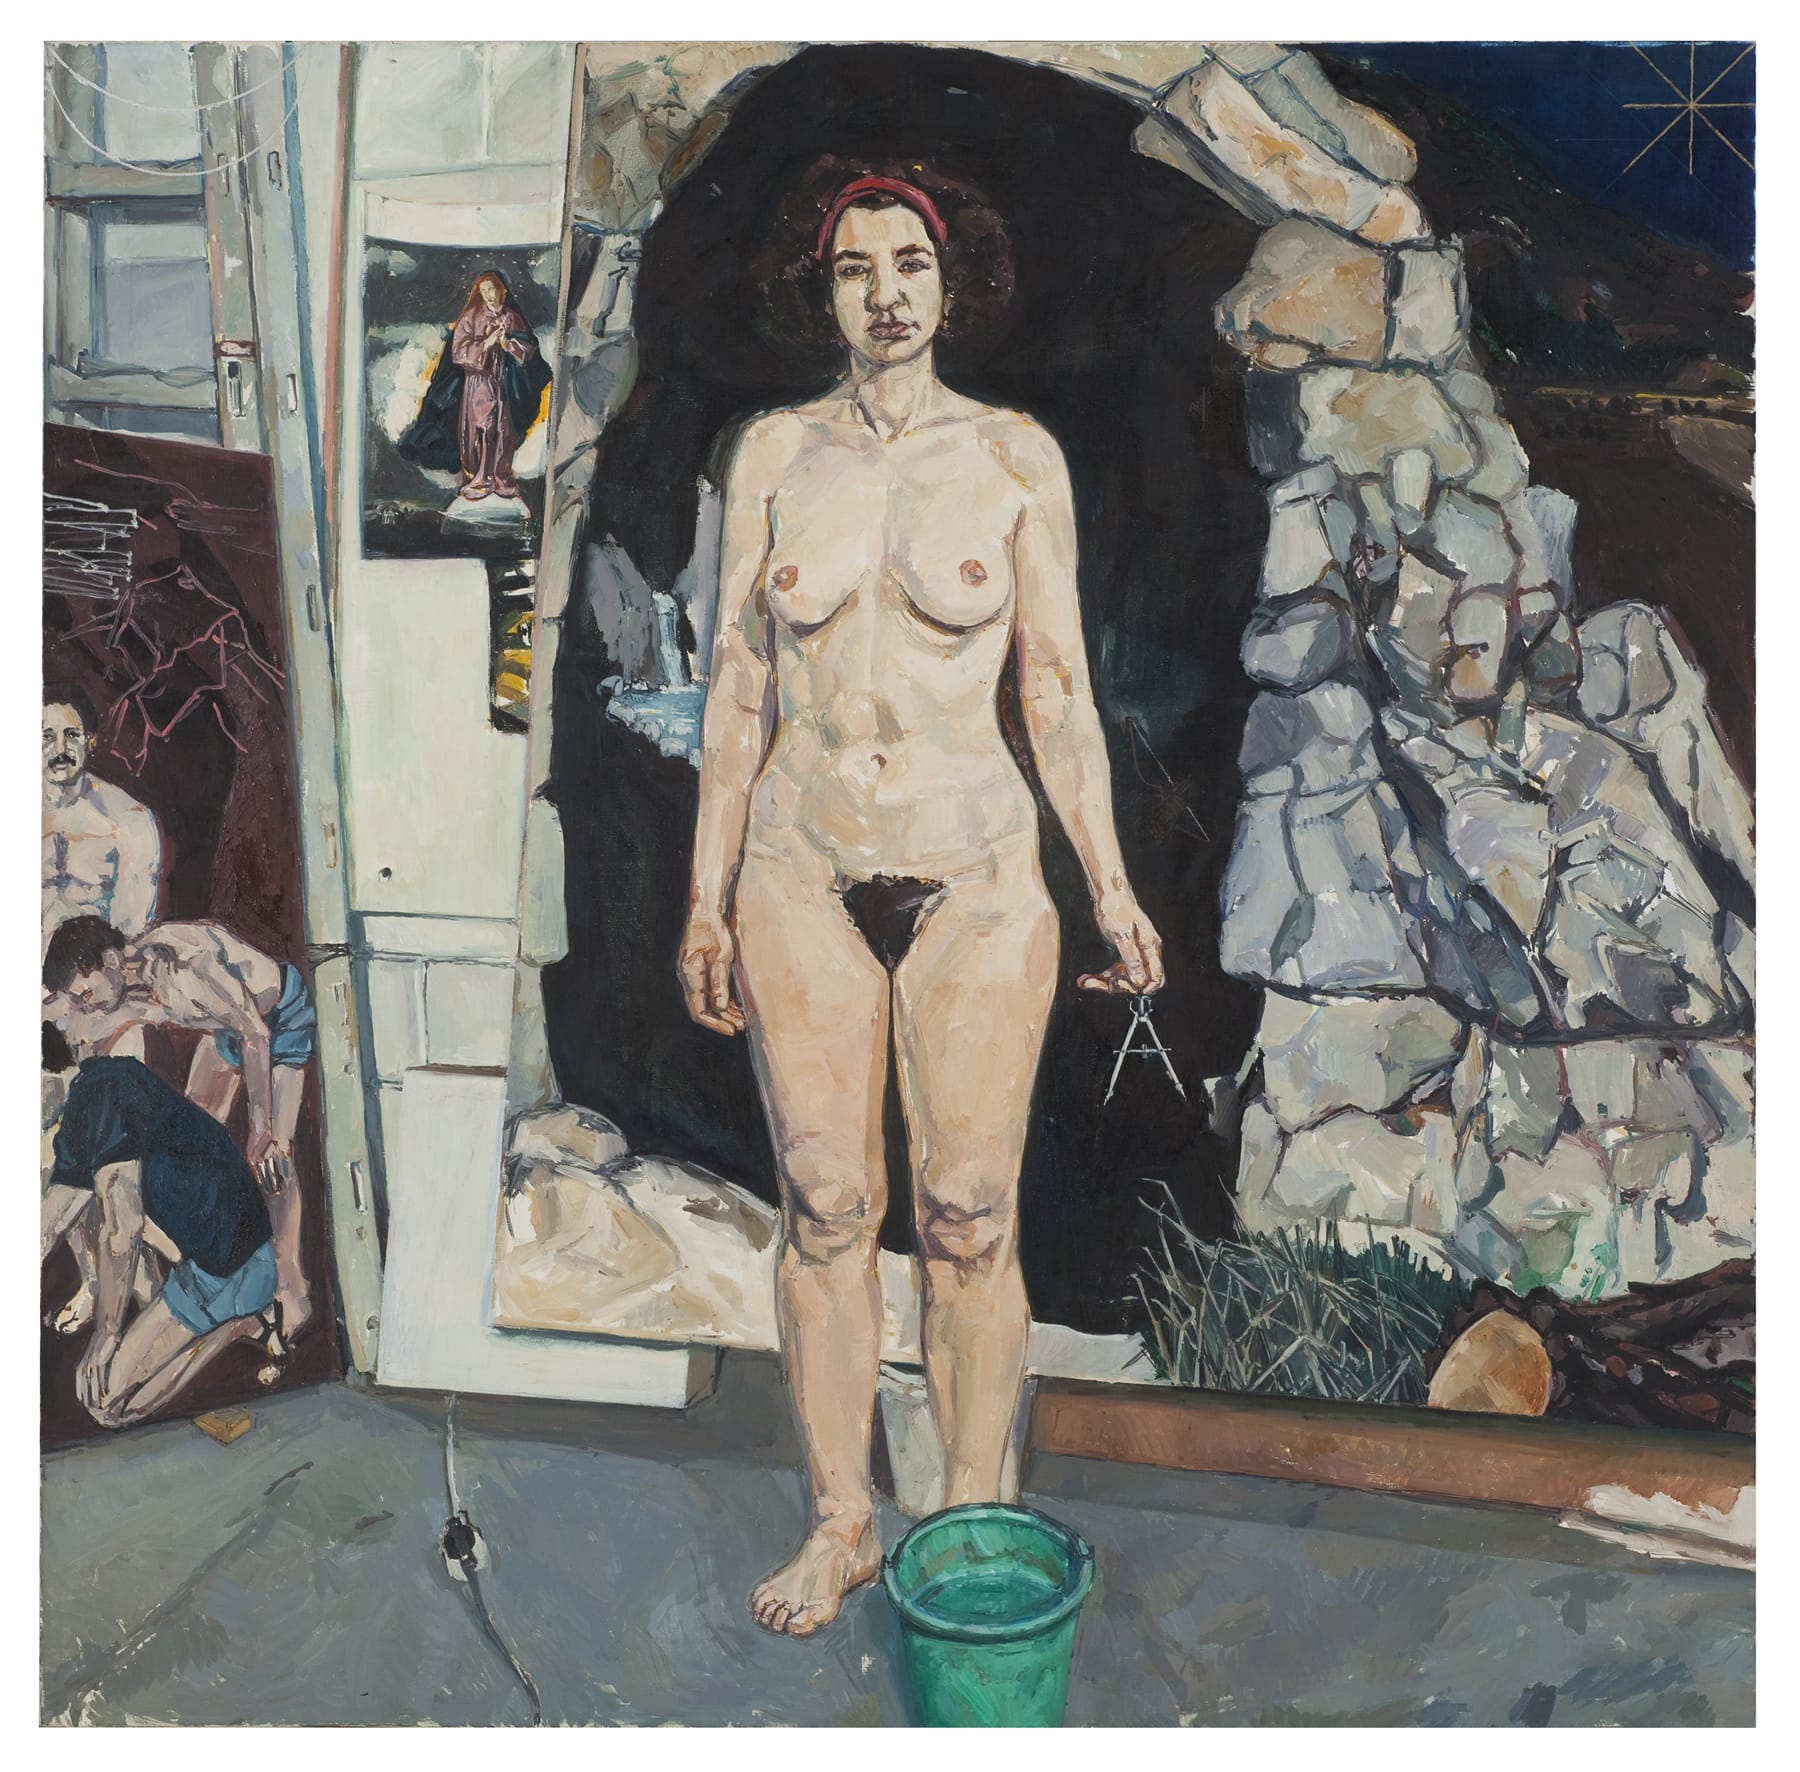 אלי שמיר, "אשה עם מחוגה", 1988-9, שמן על בד, 155.5×156 ס"מ